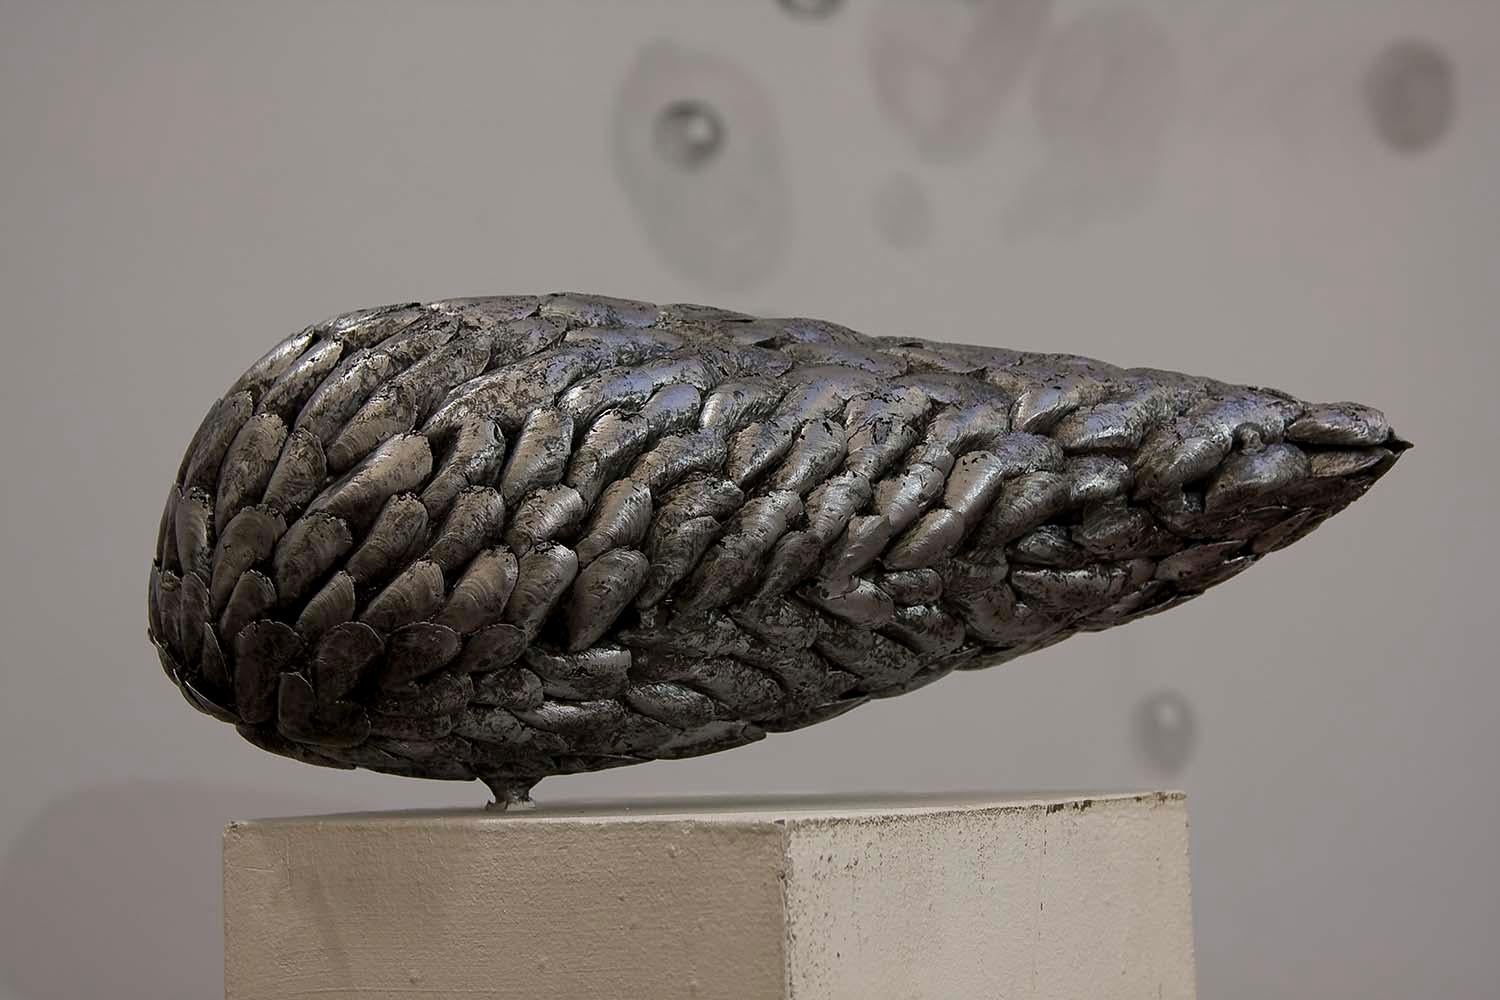 Muschel I ist eine einzigartige Aluminiumskulptur des zeitgenössischen Künstlers Ondřej Oliva mit den Maßen 20 cm × 49 cm × 26 cm (7,9 × 19,3 × 10,2 in). Die Skulptur ist signiert und wird mit einem Echtheitszertifikat geliefert.

Diese Figur wurde